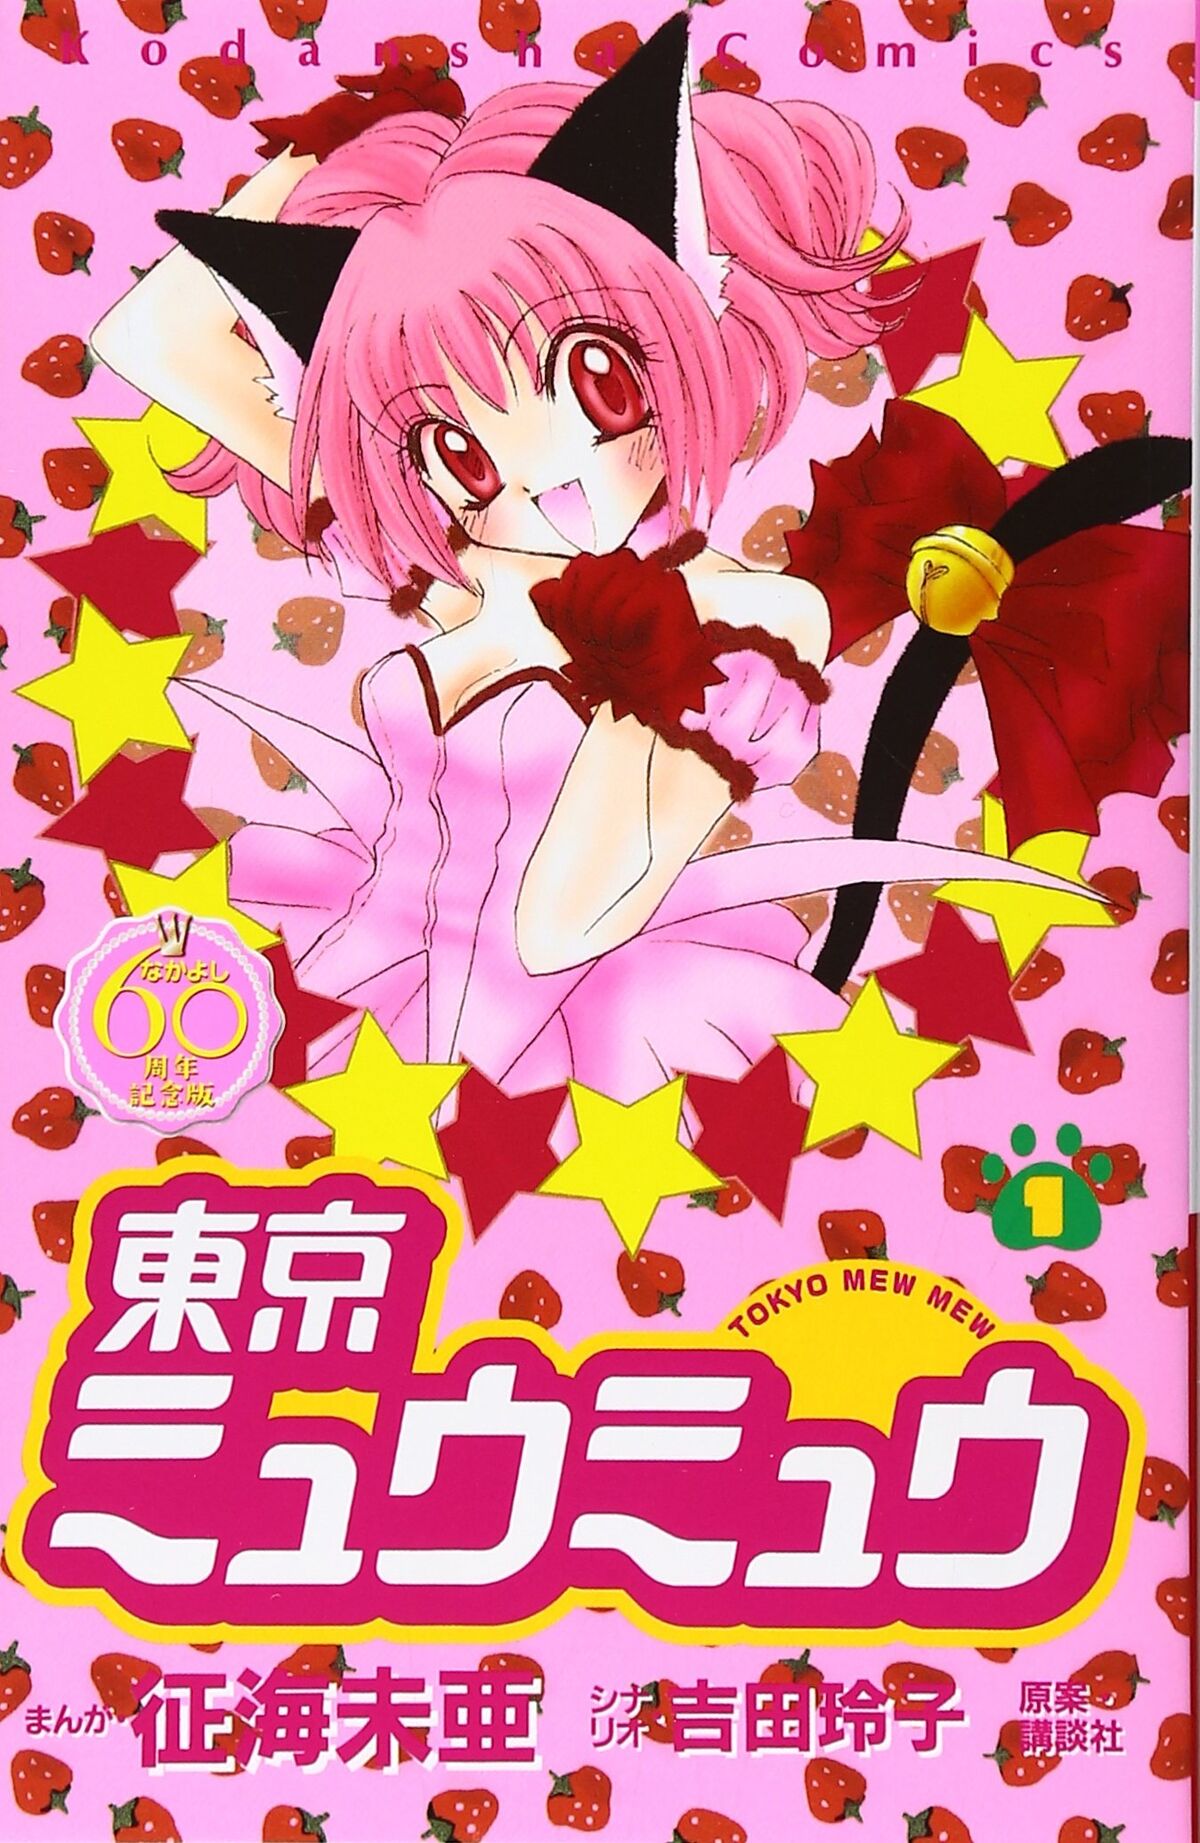 Japanese Manga Kodansha DXKC Mia Seikai !!) Tokyo Mew Mew New Format  Edition 2